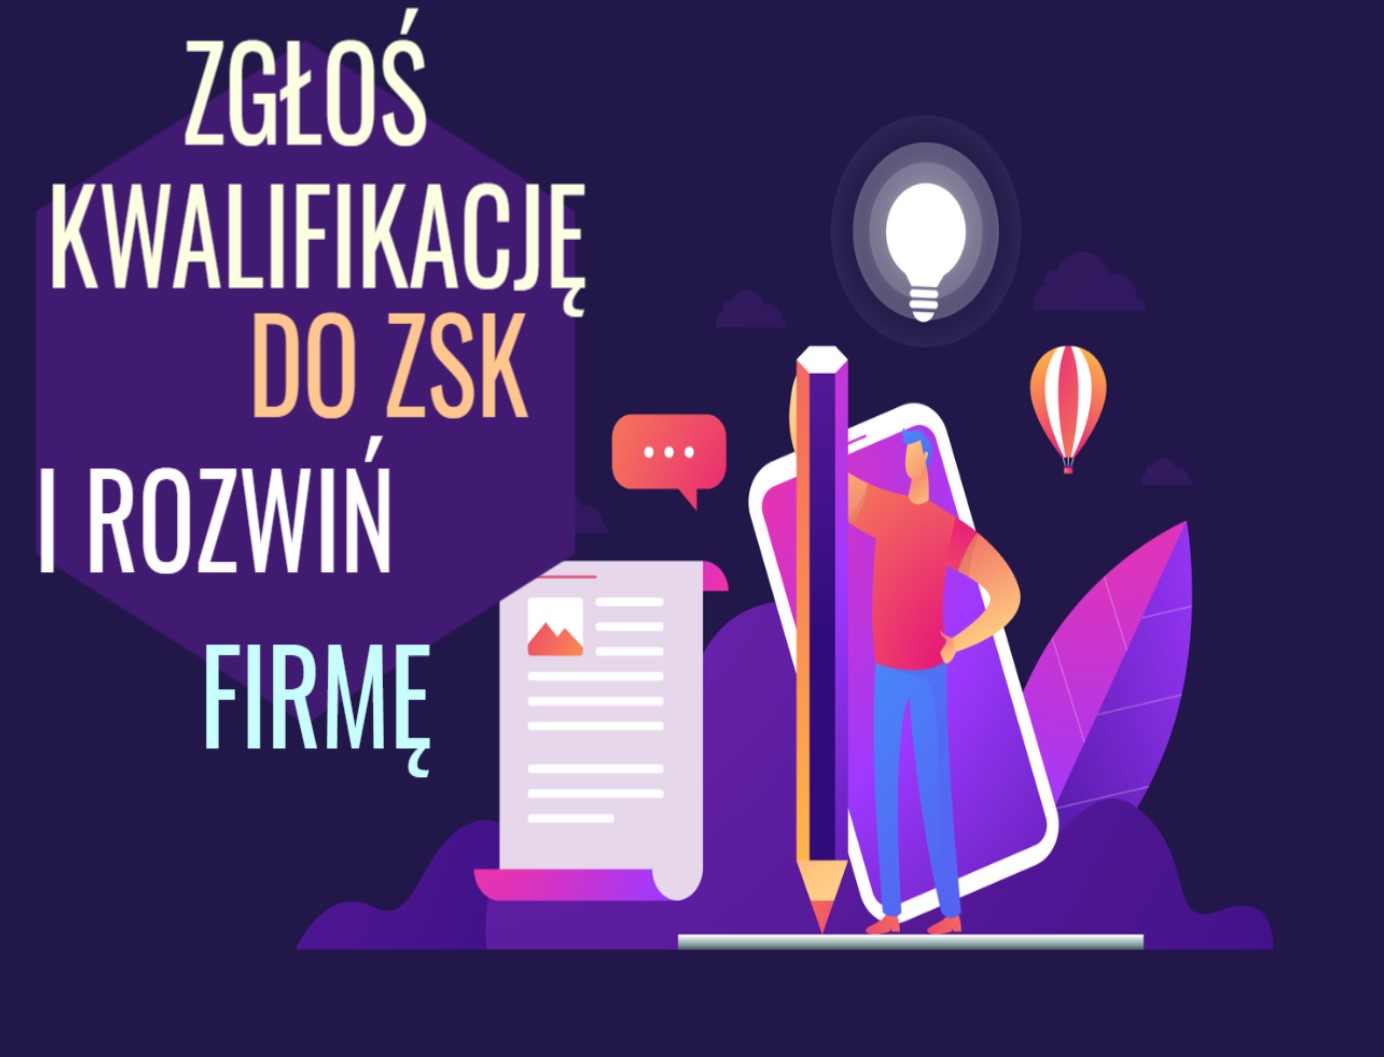 Read more about the article Chcesz zgłosić kwalifikację do ZSK? Skontaktuj się z nami i zyskaj bezpłatne wsparcie!